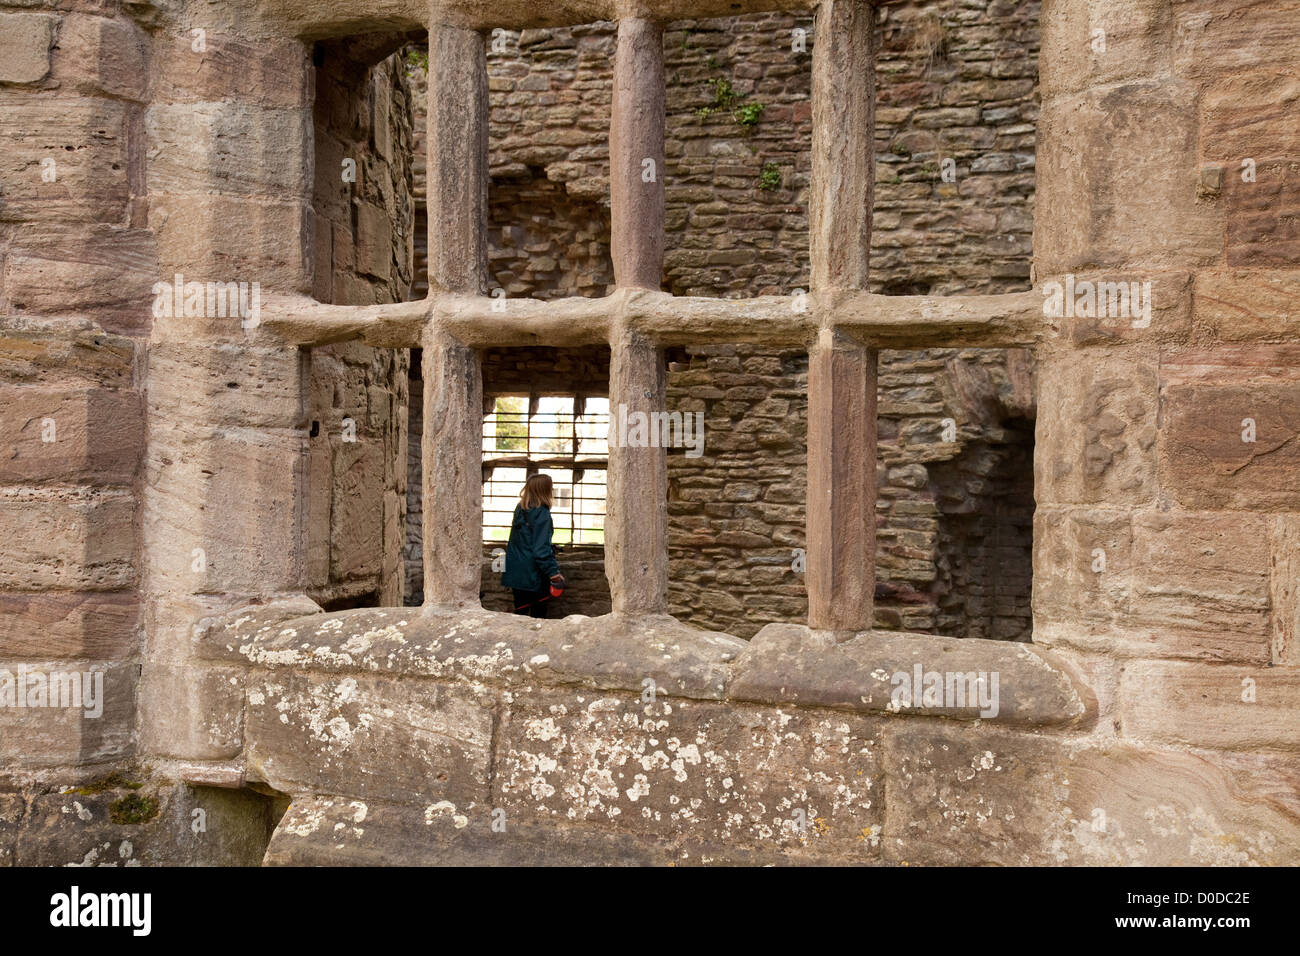 Un visiteur dans les ruines de 11e siècle, château médiéval de Ludlow Ludlow Shropshire England UK Banque D'Images